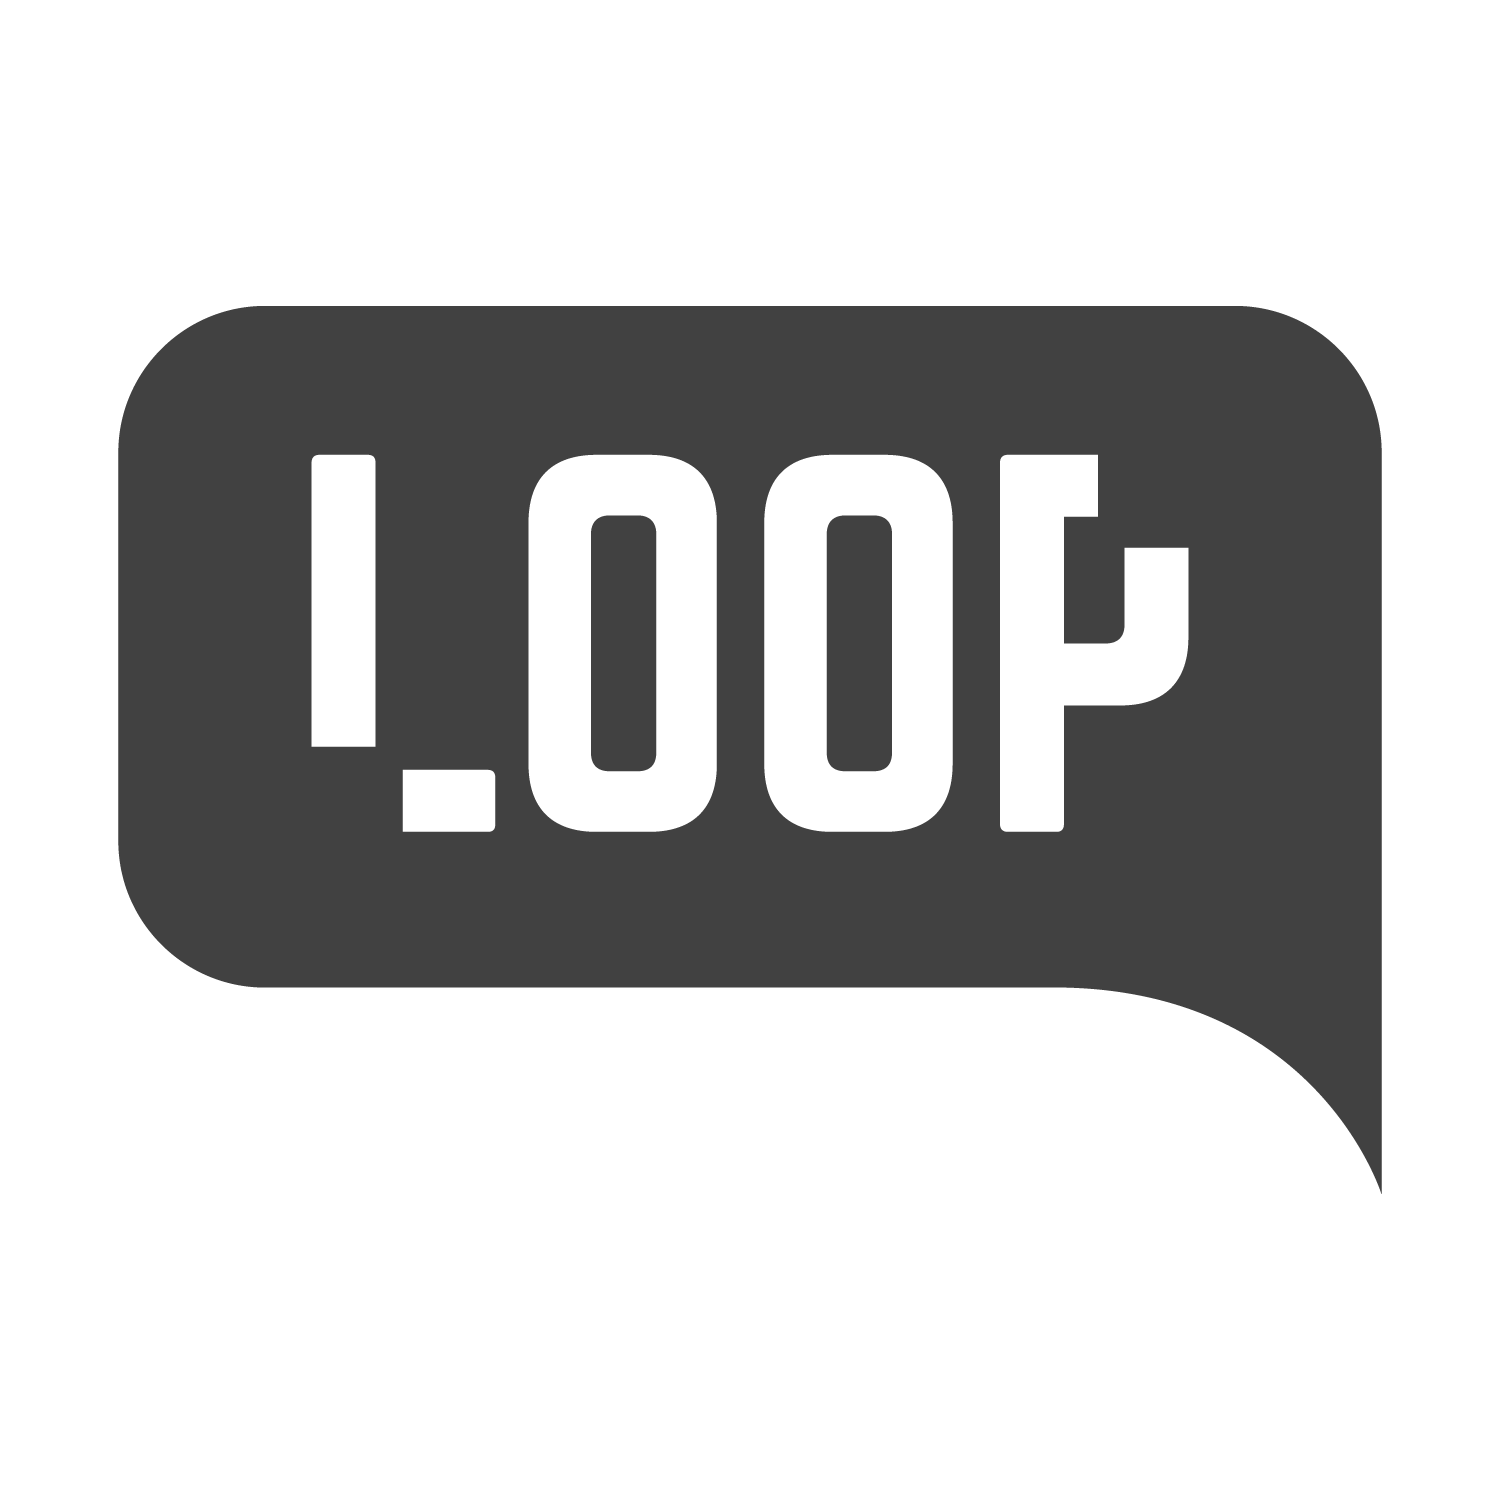 LOOP